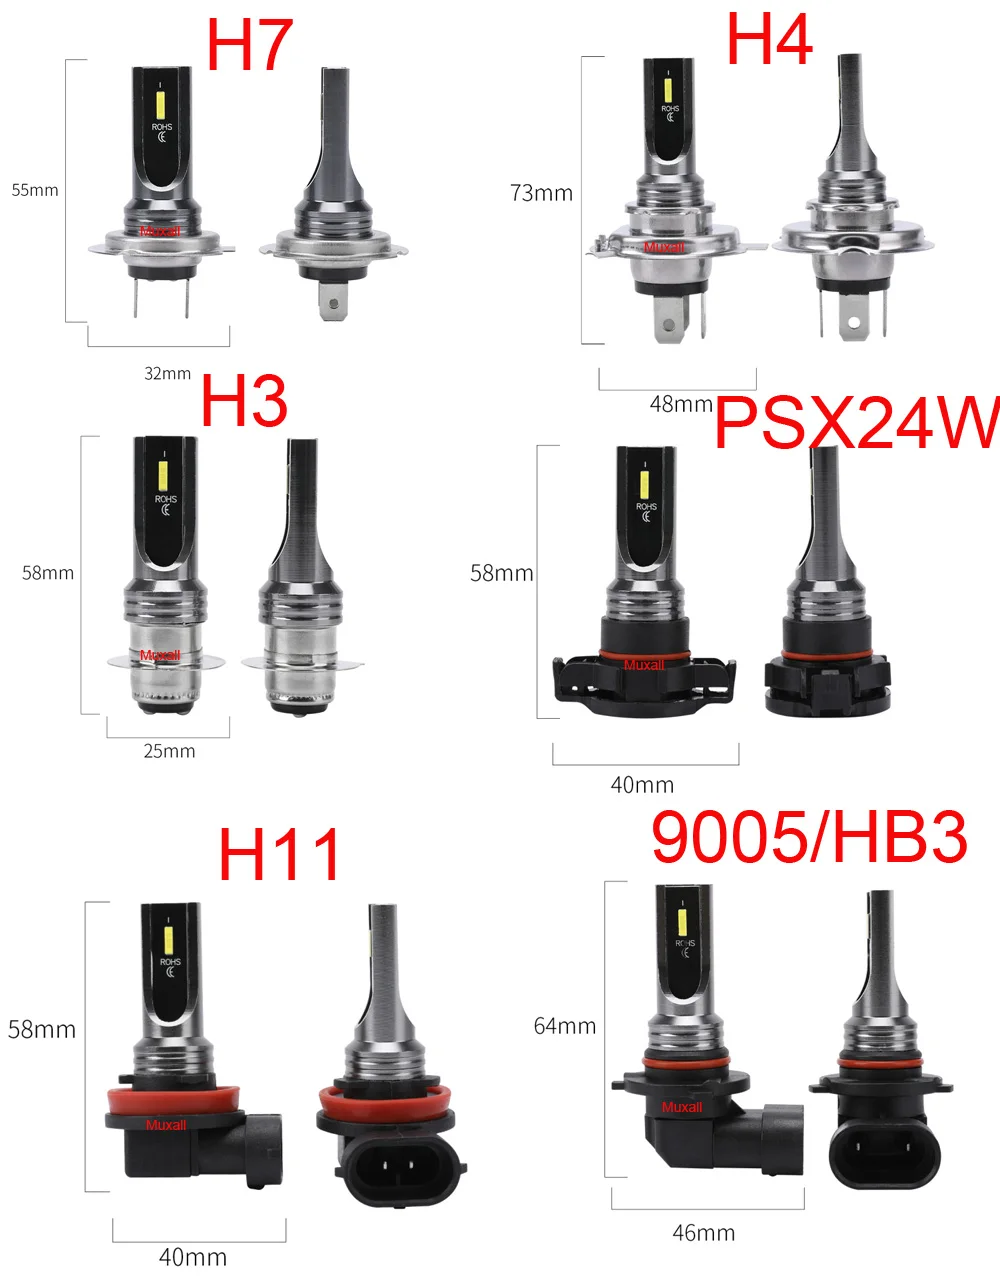 2Pcs H7 H4 H11 H3 H1 LED Car Headlight Kit 80W 12000LM Fog Lamp Bulbs 6000K 4300K IP 68 Waterproof Led Headllamp Car Accessories images - 6